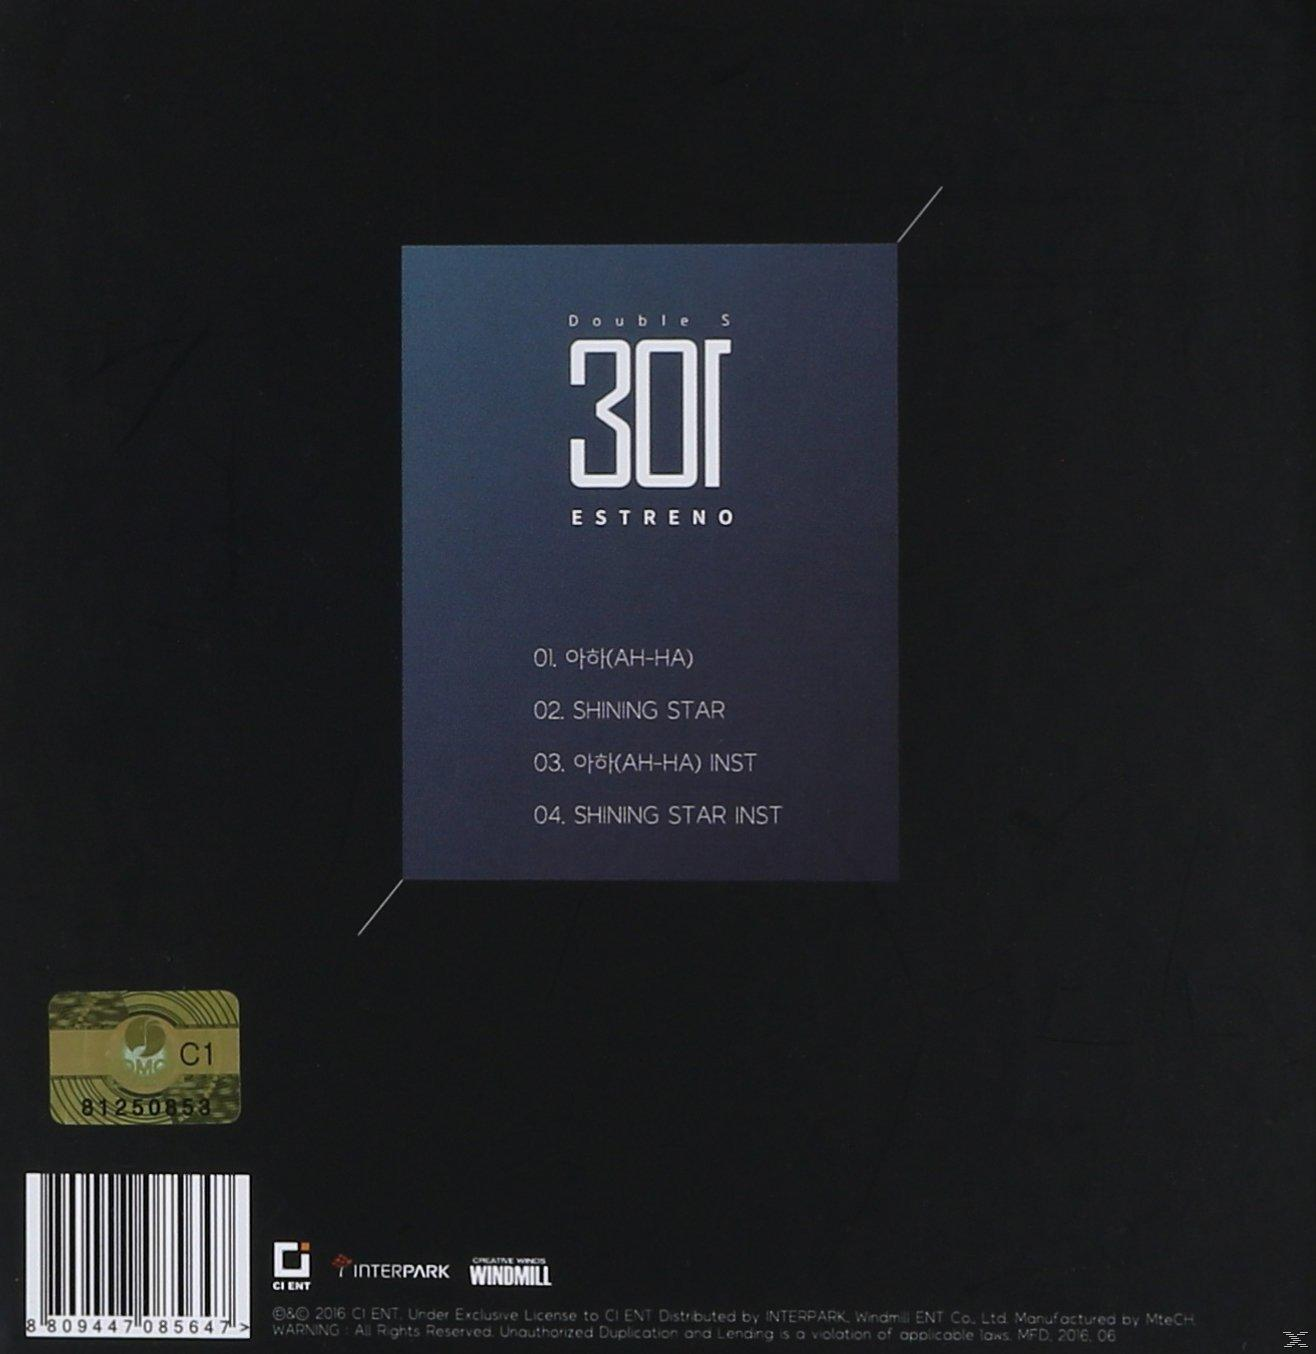 (CD) Estreno - Double 301 - S